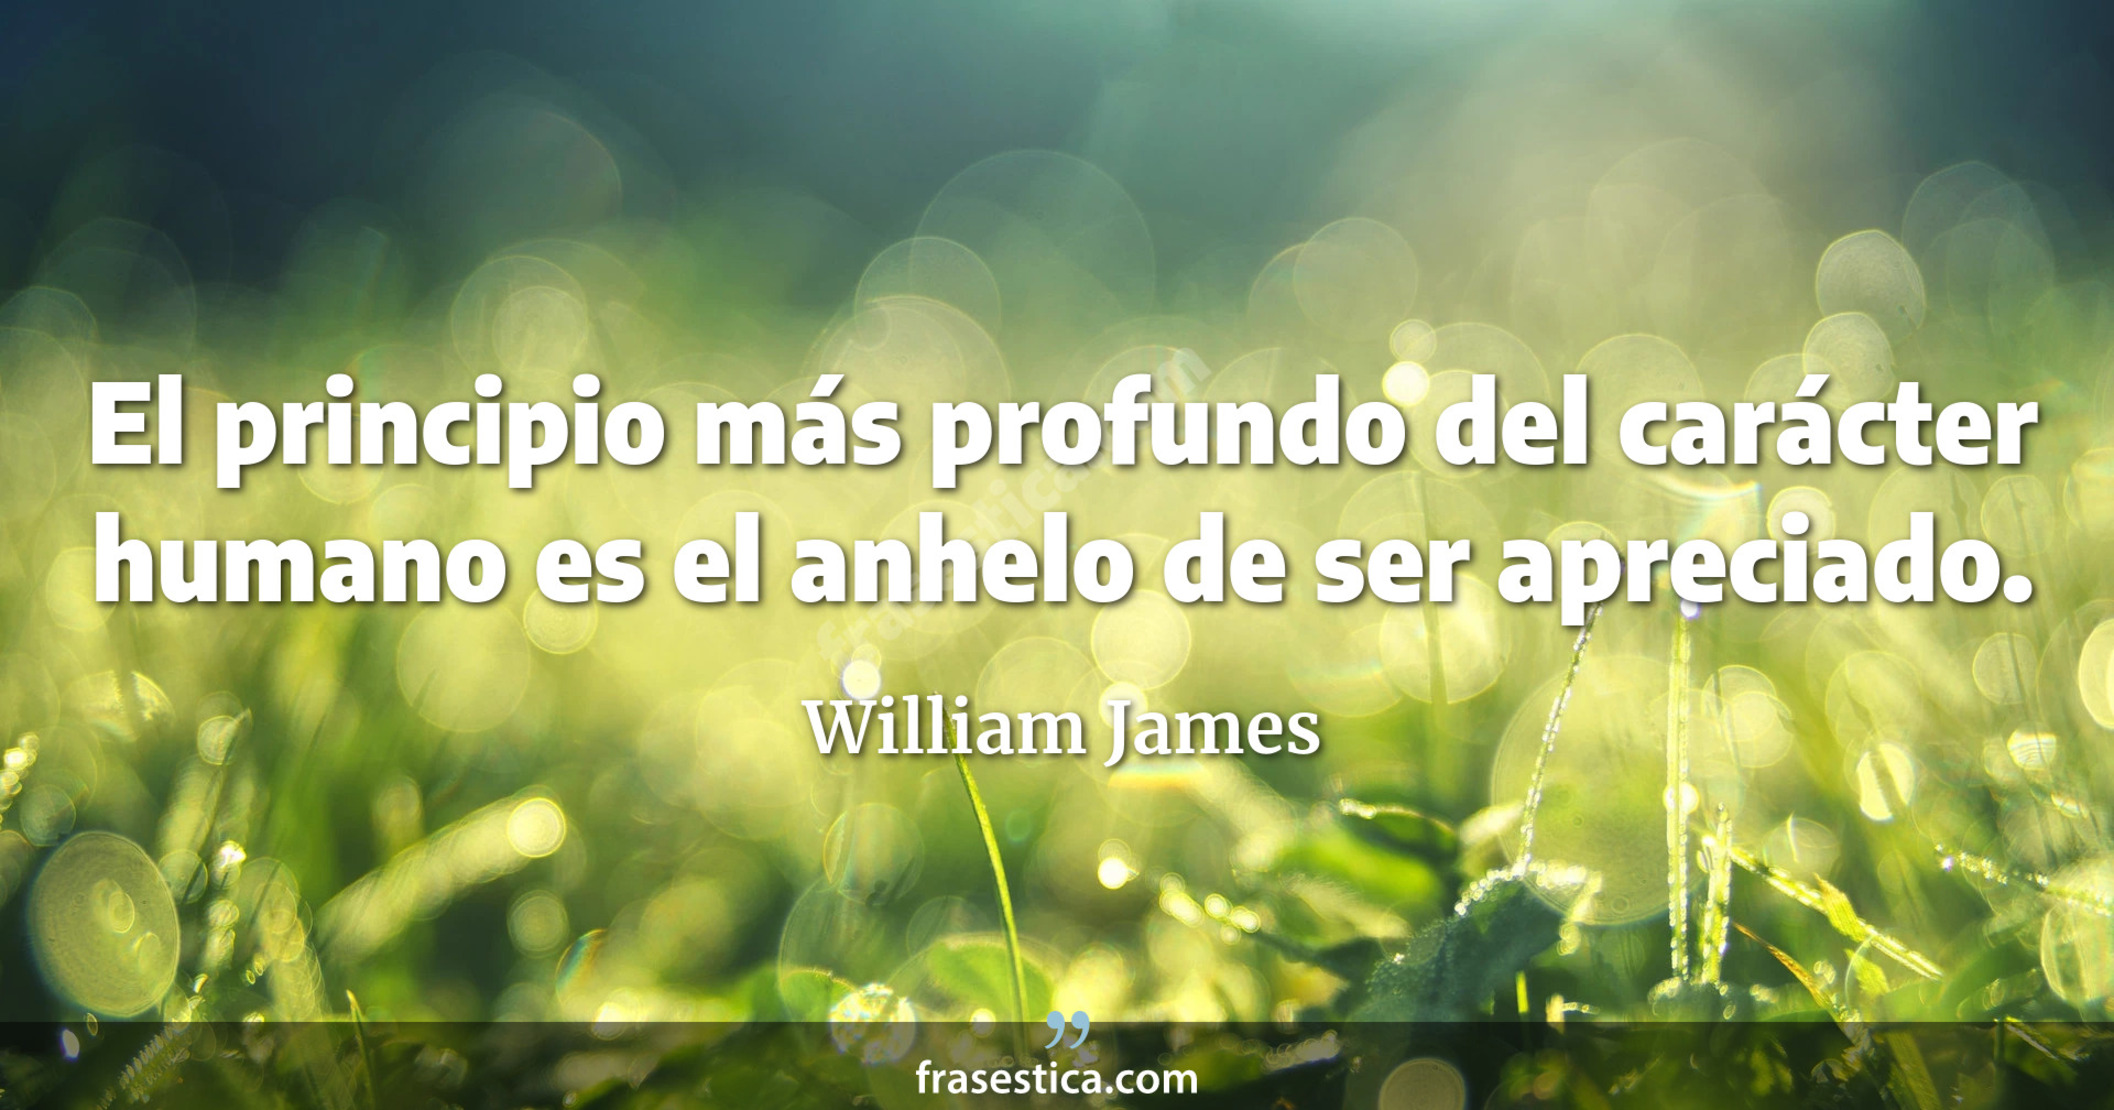 El principio más profundo del carácter humano es el anhelo de ser apreciado. - William James